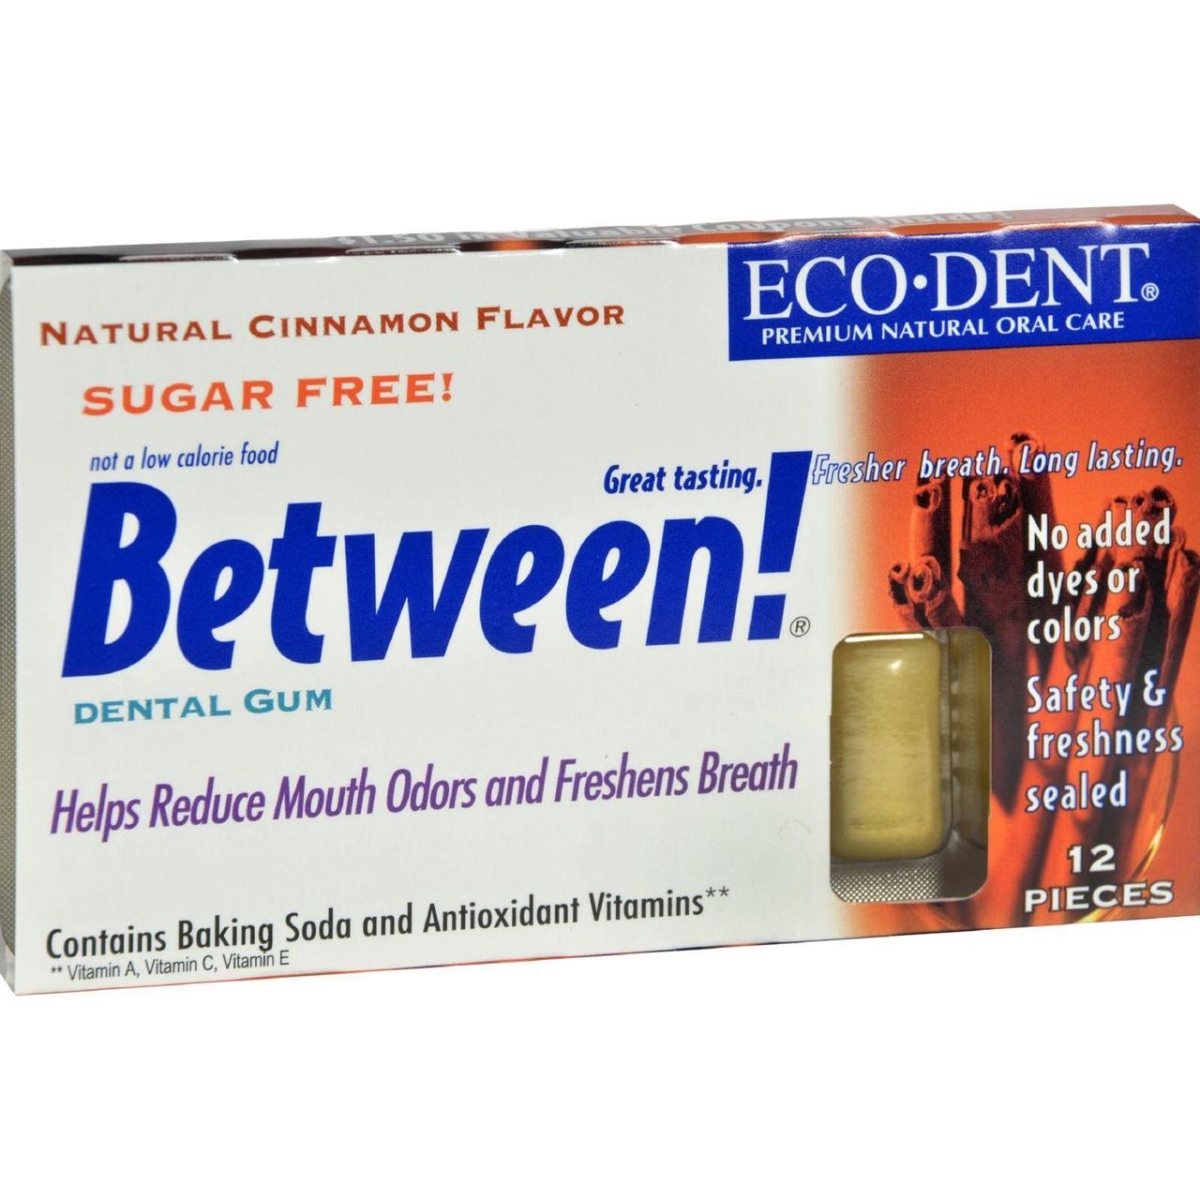 Hg0898072 Between Dental Gum, Cinnamon - Case Of 12, Pack Of 12